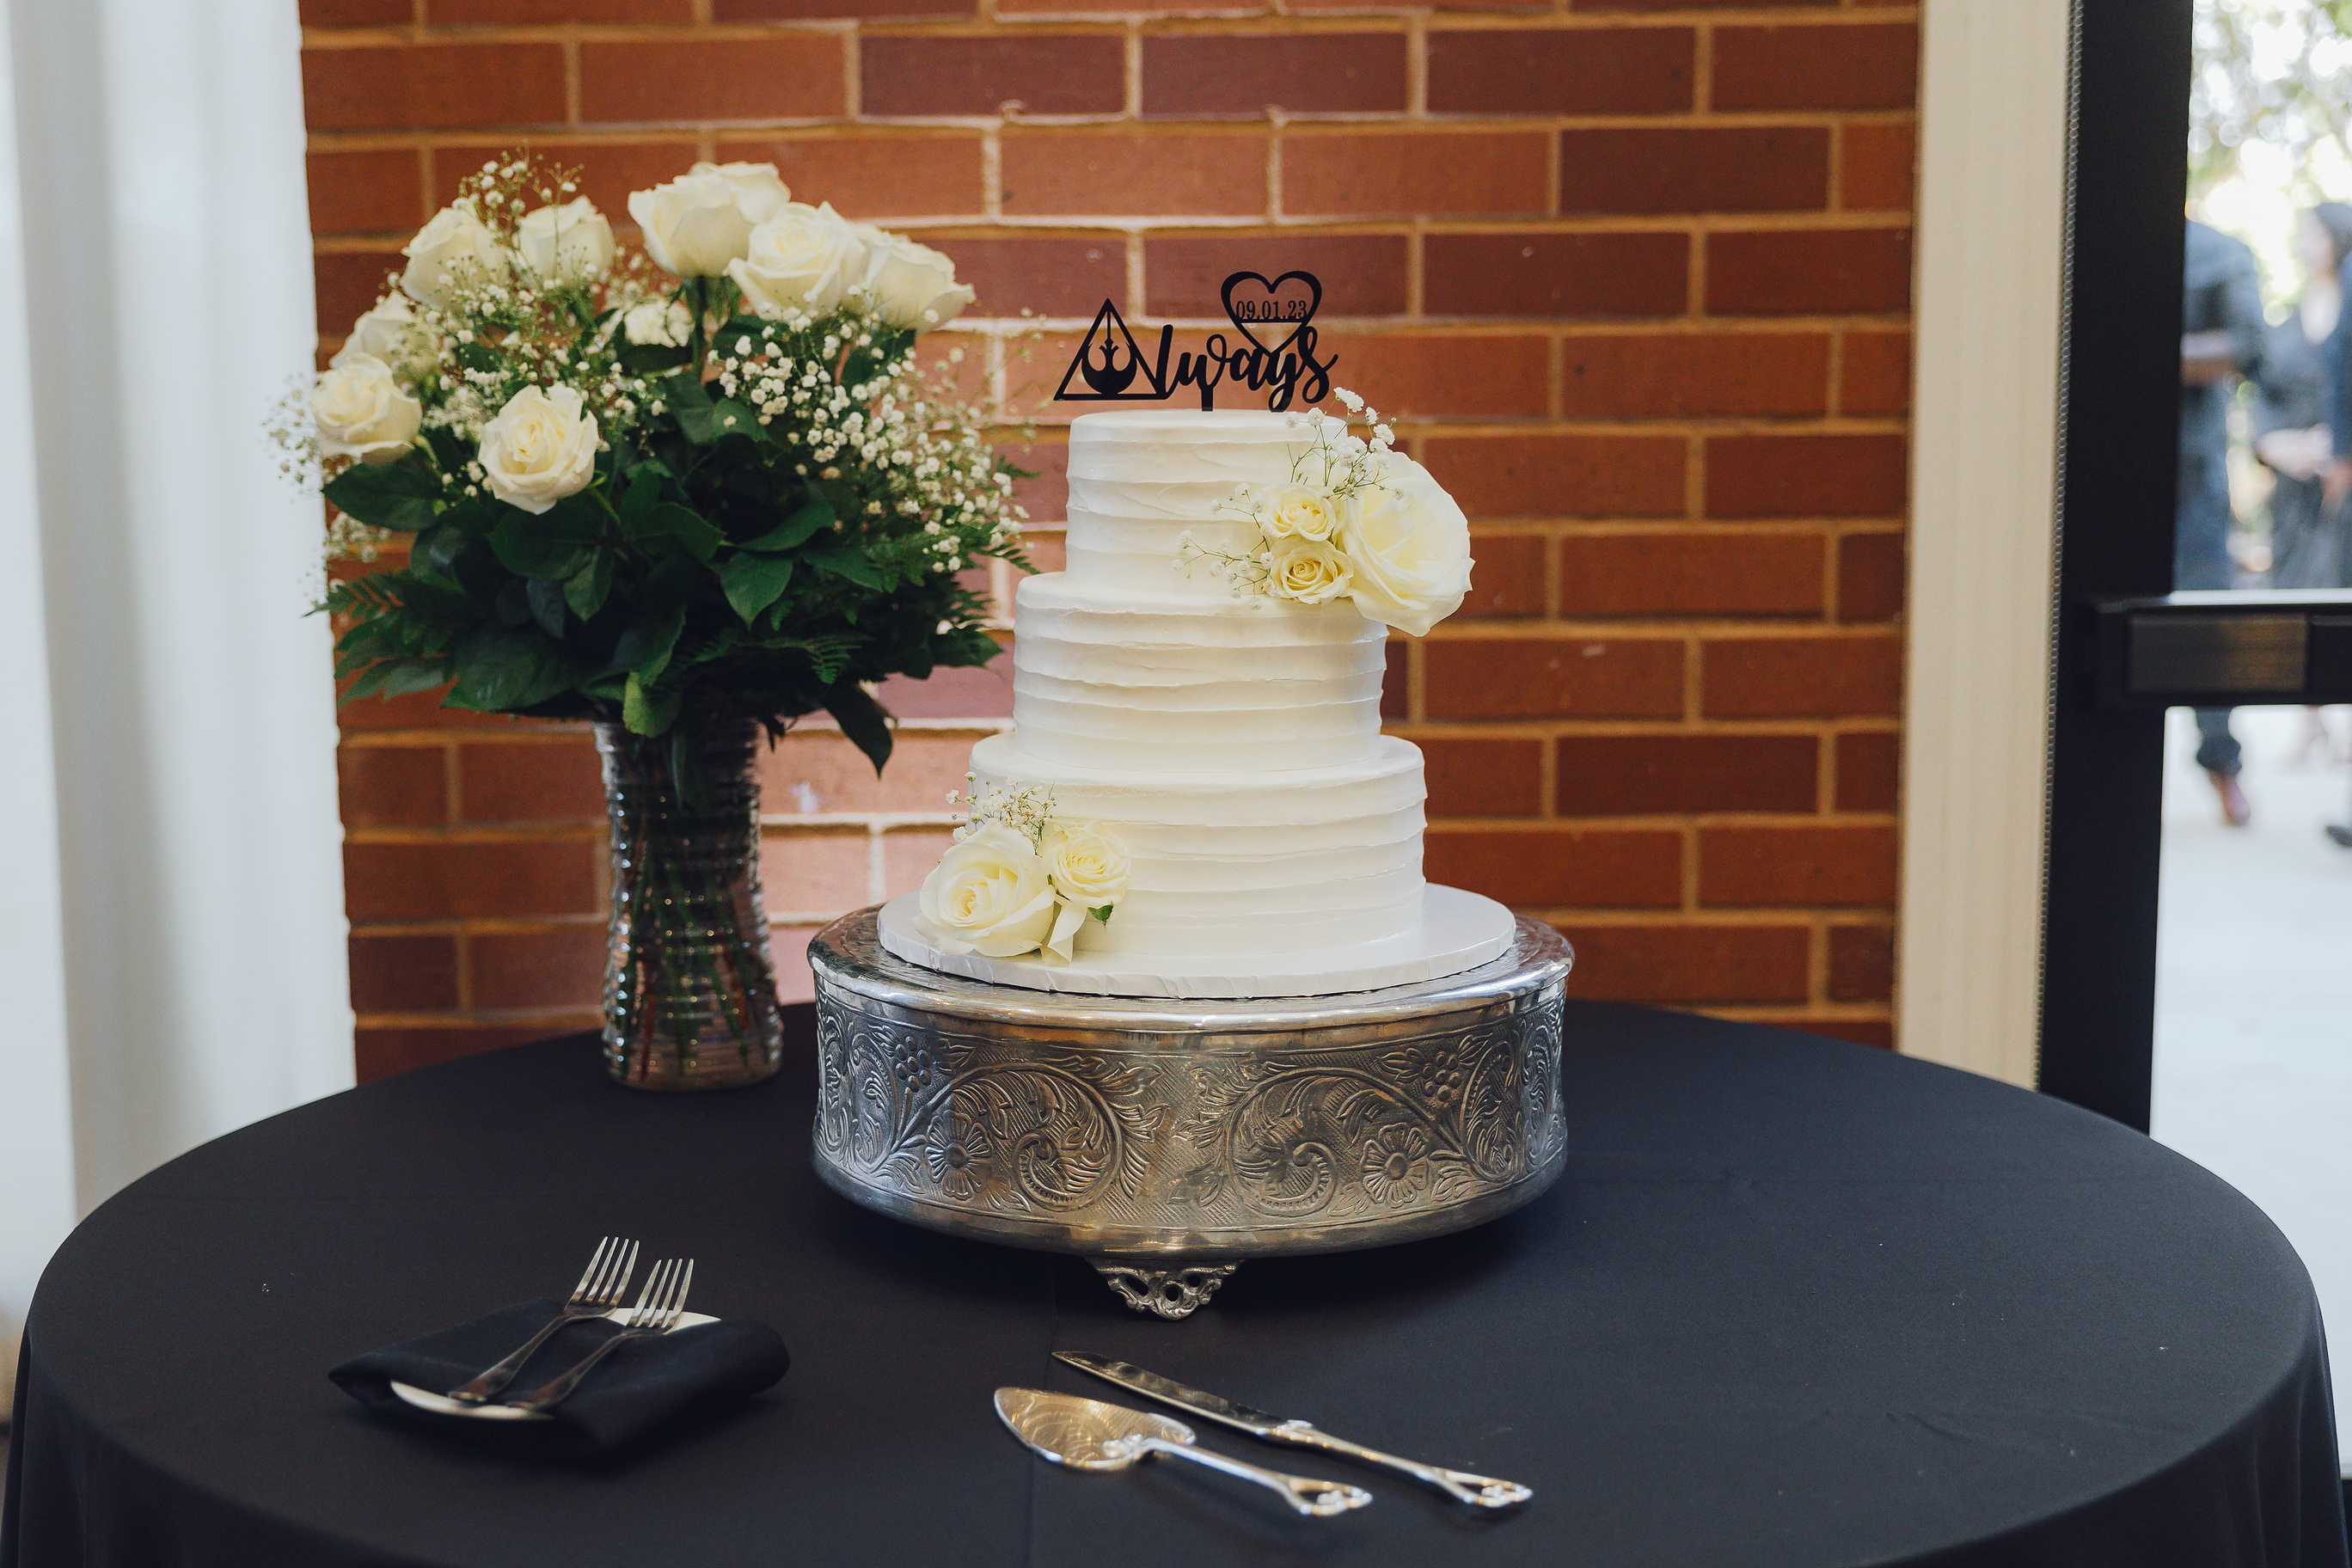 Classic & Elegant Cake - Evergreen Springs by Wedgewood Weddings